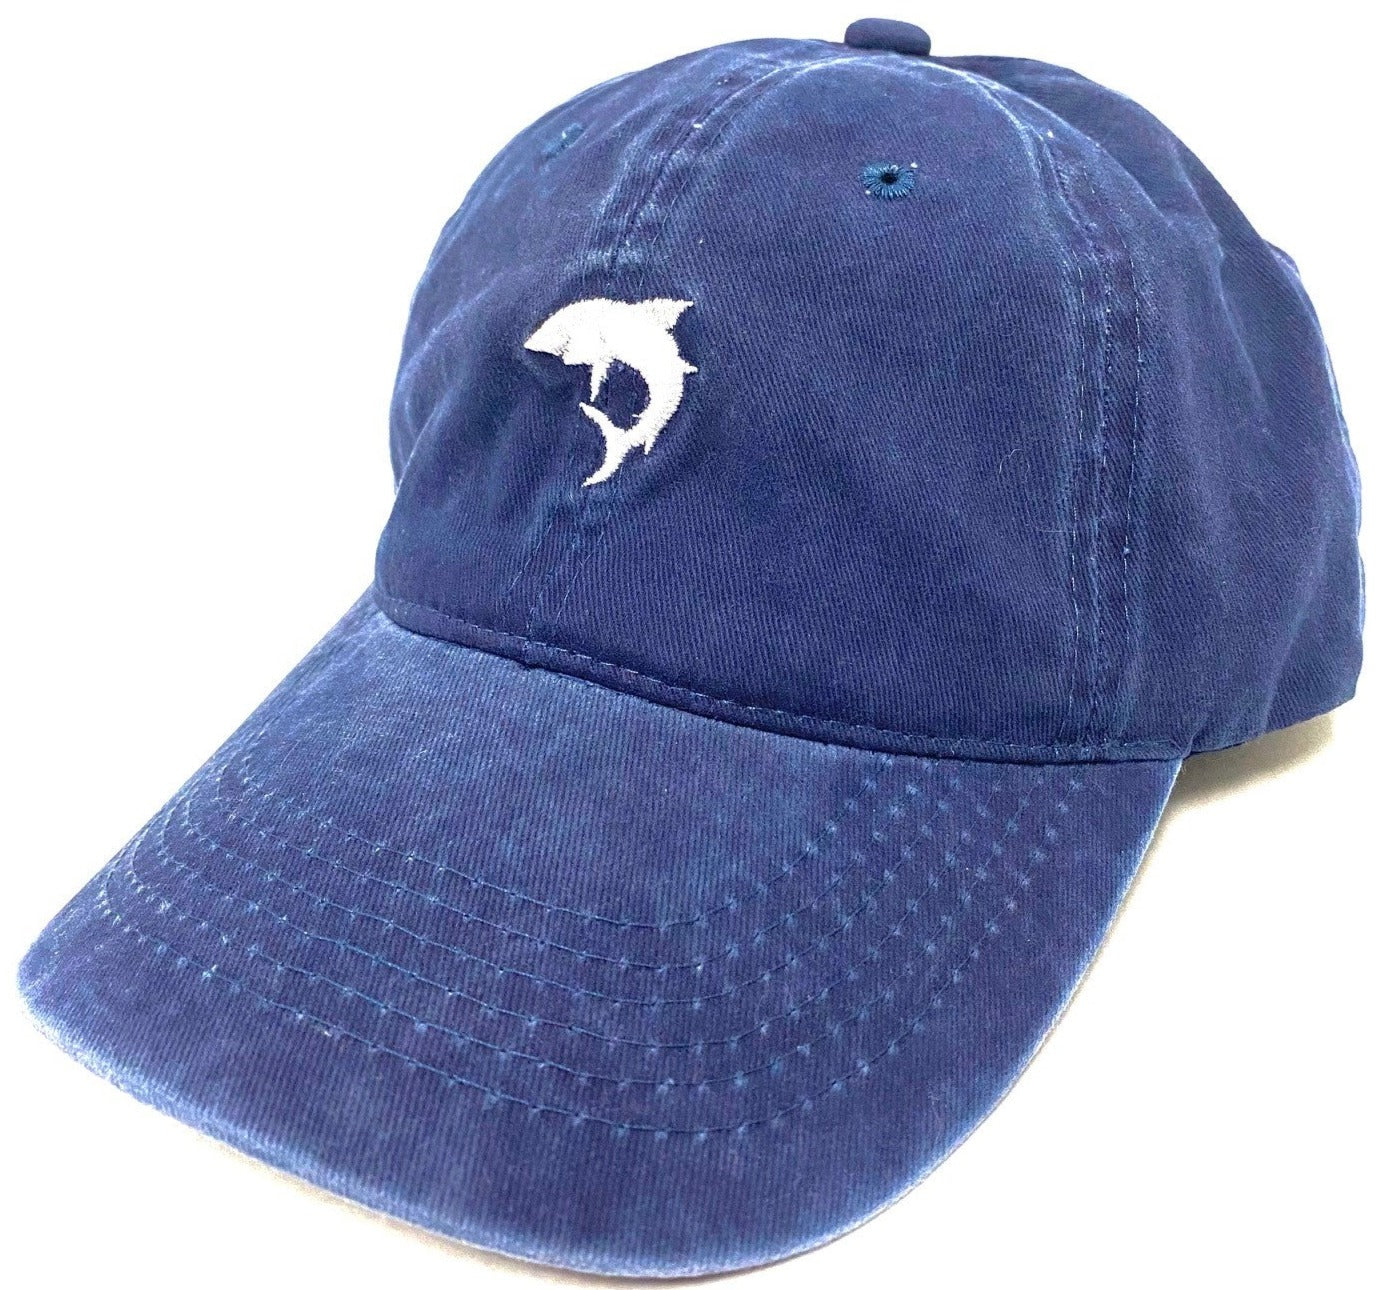 Shark Icon Hat